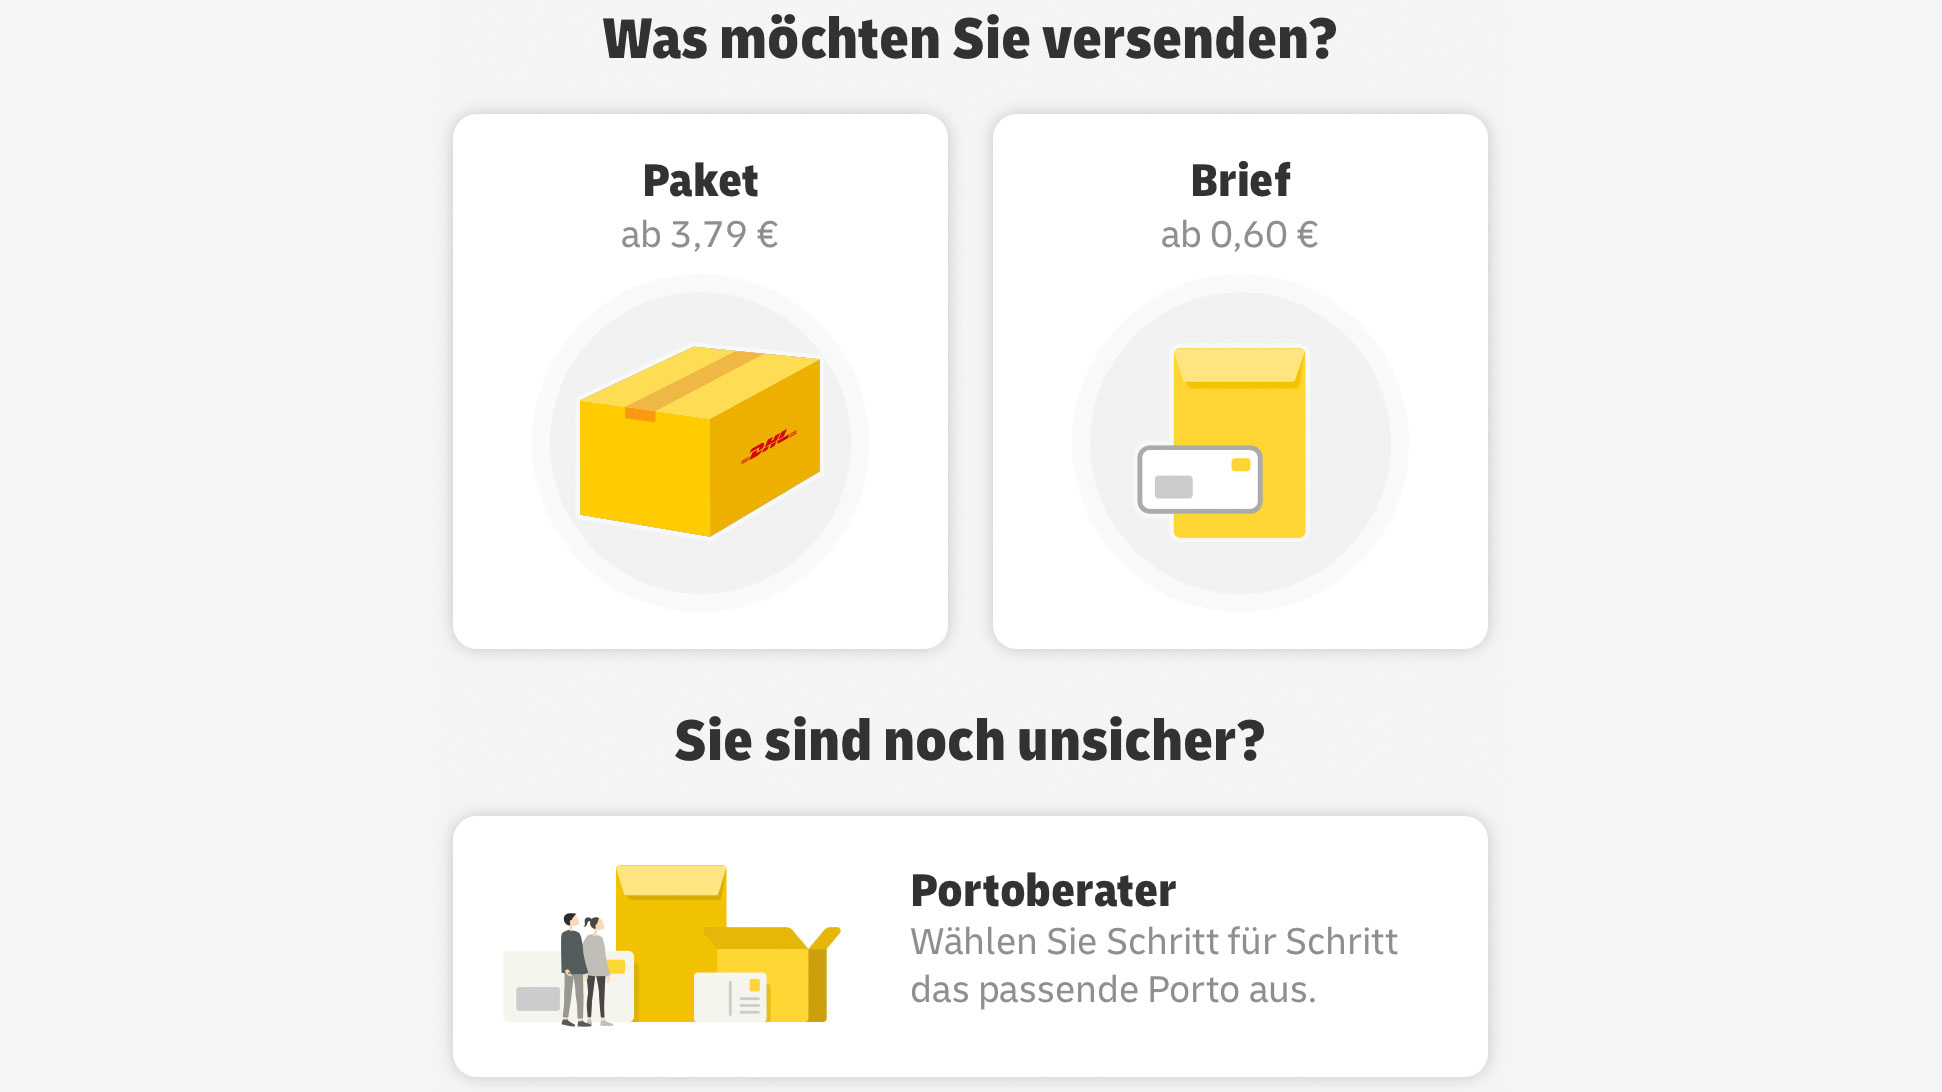 Mobile Briefmarke" ist da: Briefporto und Paketdienste nun in einer DHL-App  | heise online